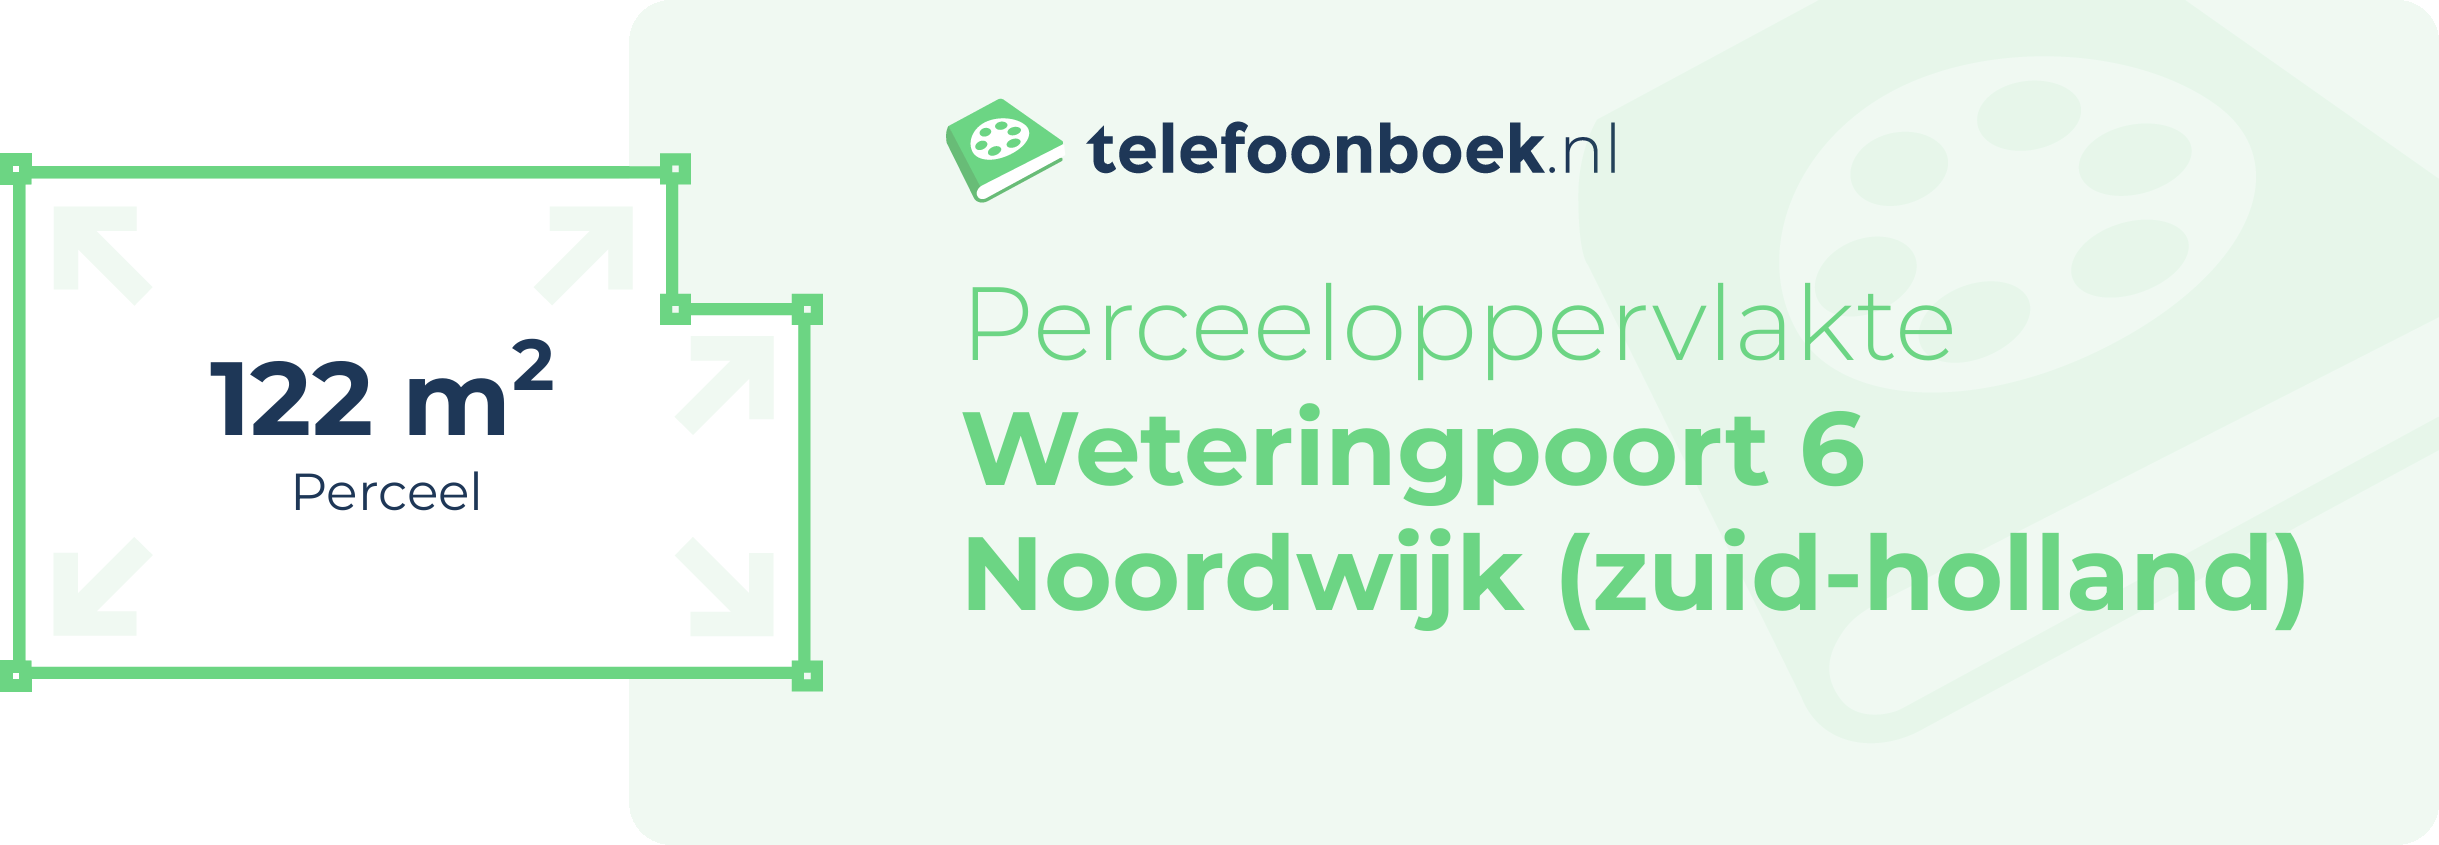 Perceeloppervlakte Weteringpoort 6 Noordwijk (Zuid-Holland)